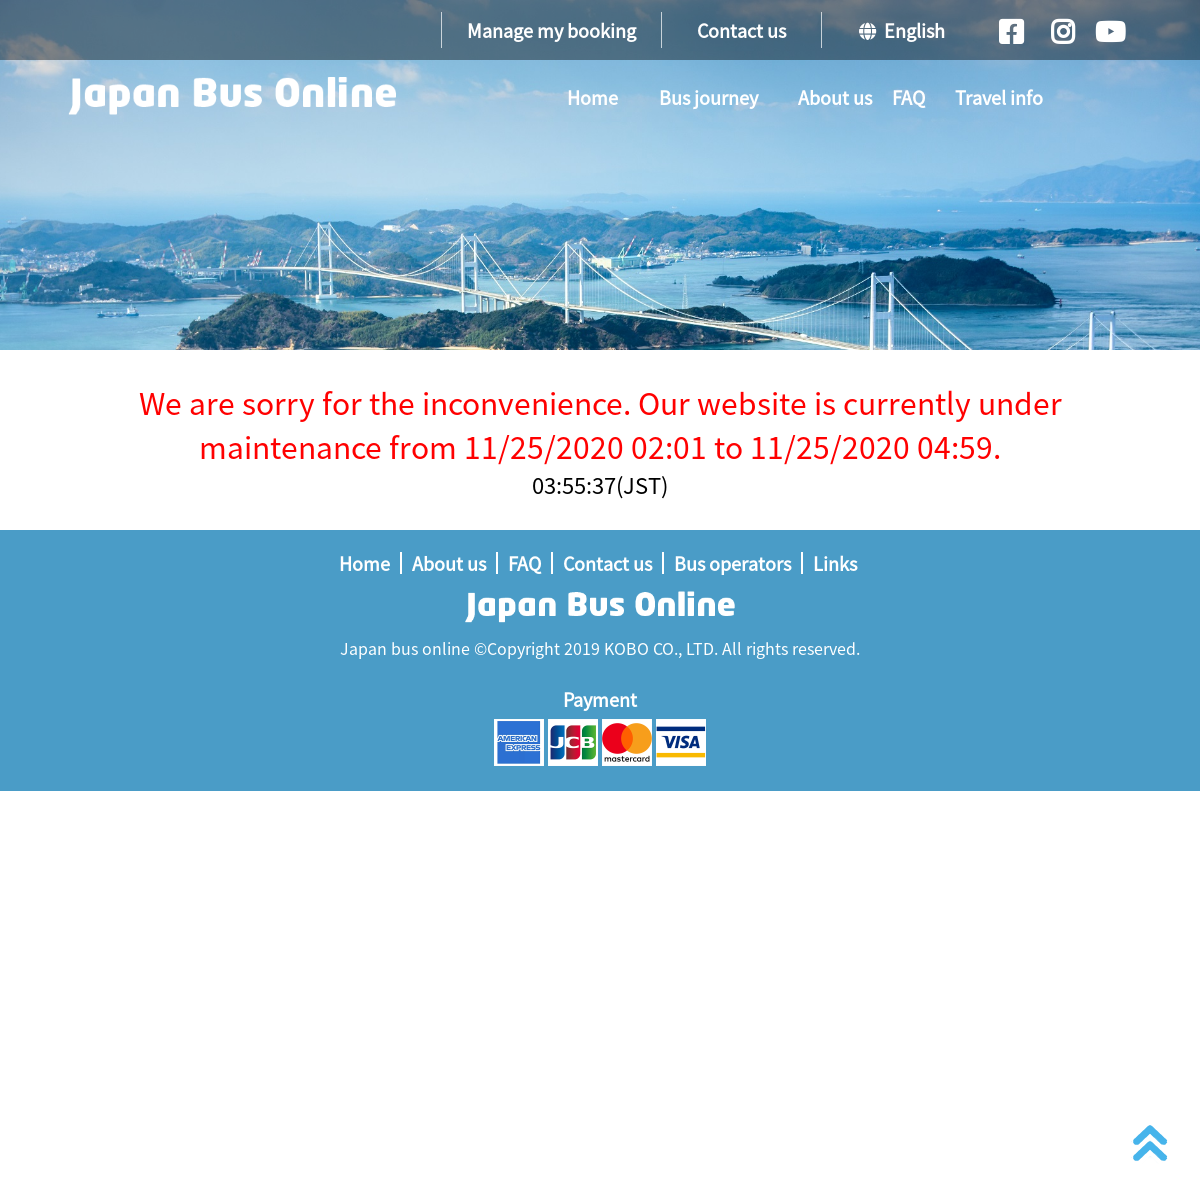 A complete backup of japanbusonline.com